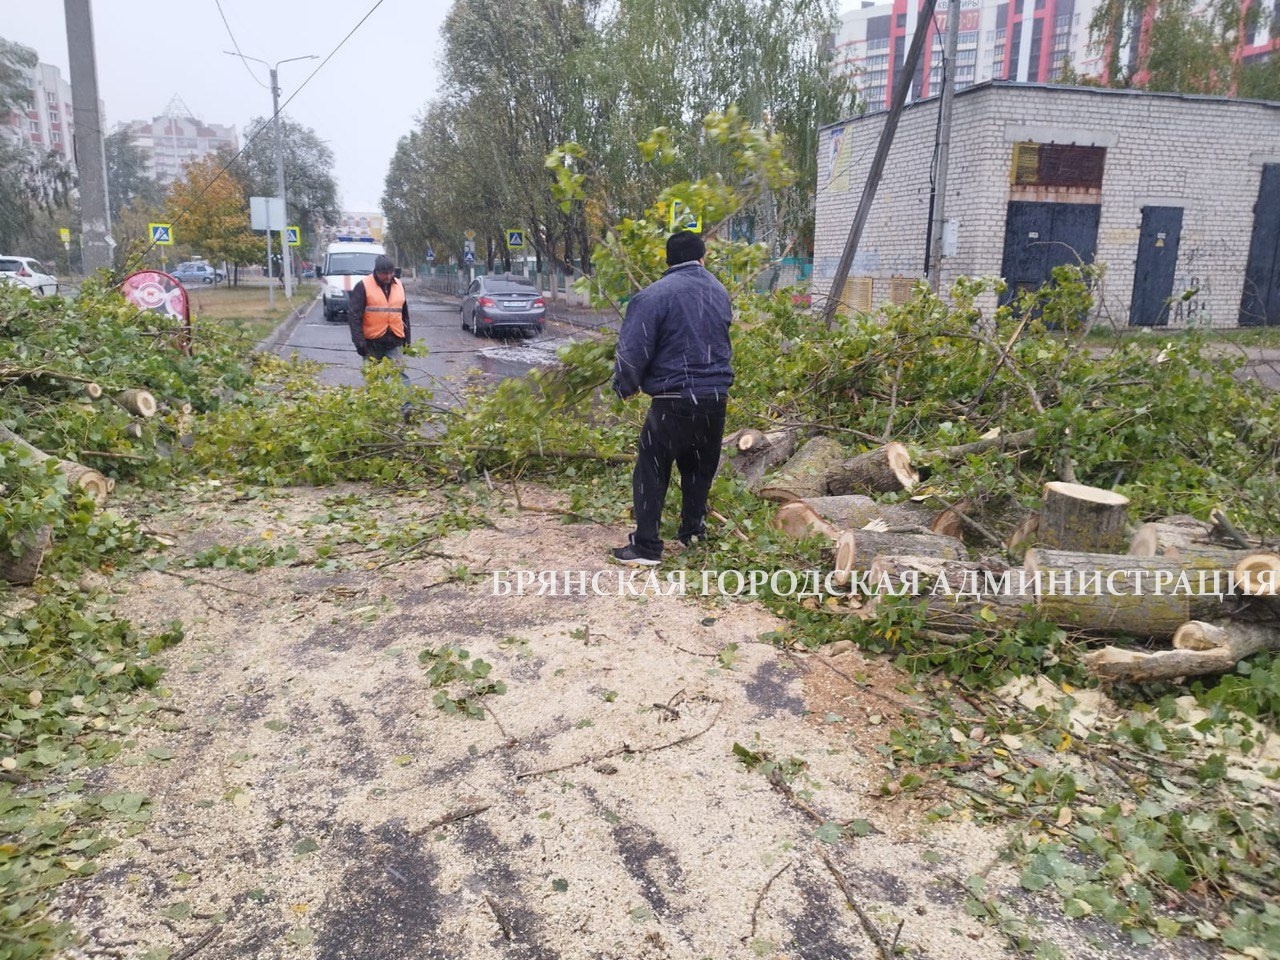 Опубликованы фото последствий урагана 8 октября в Брянске